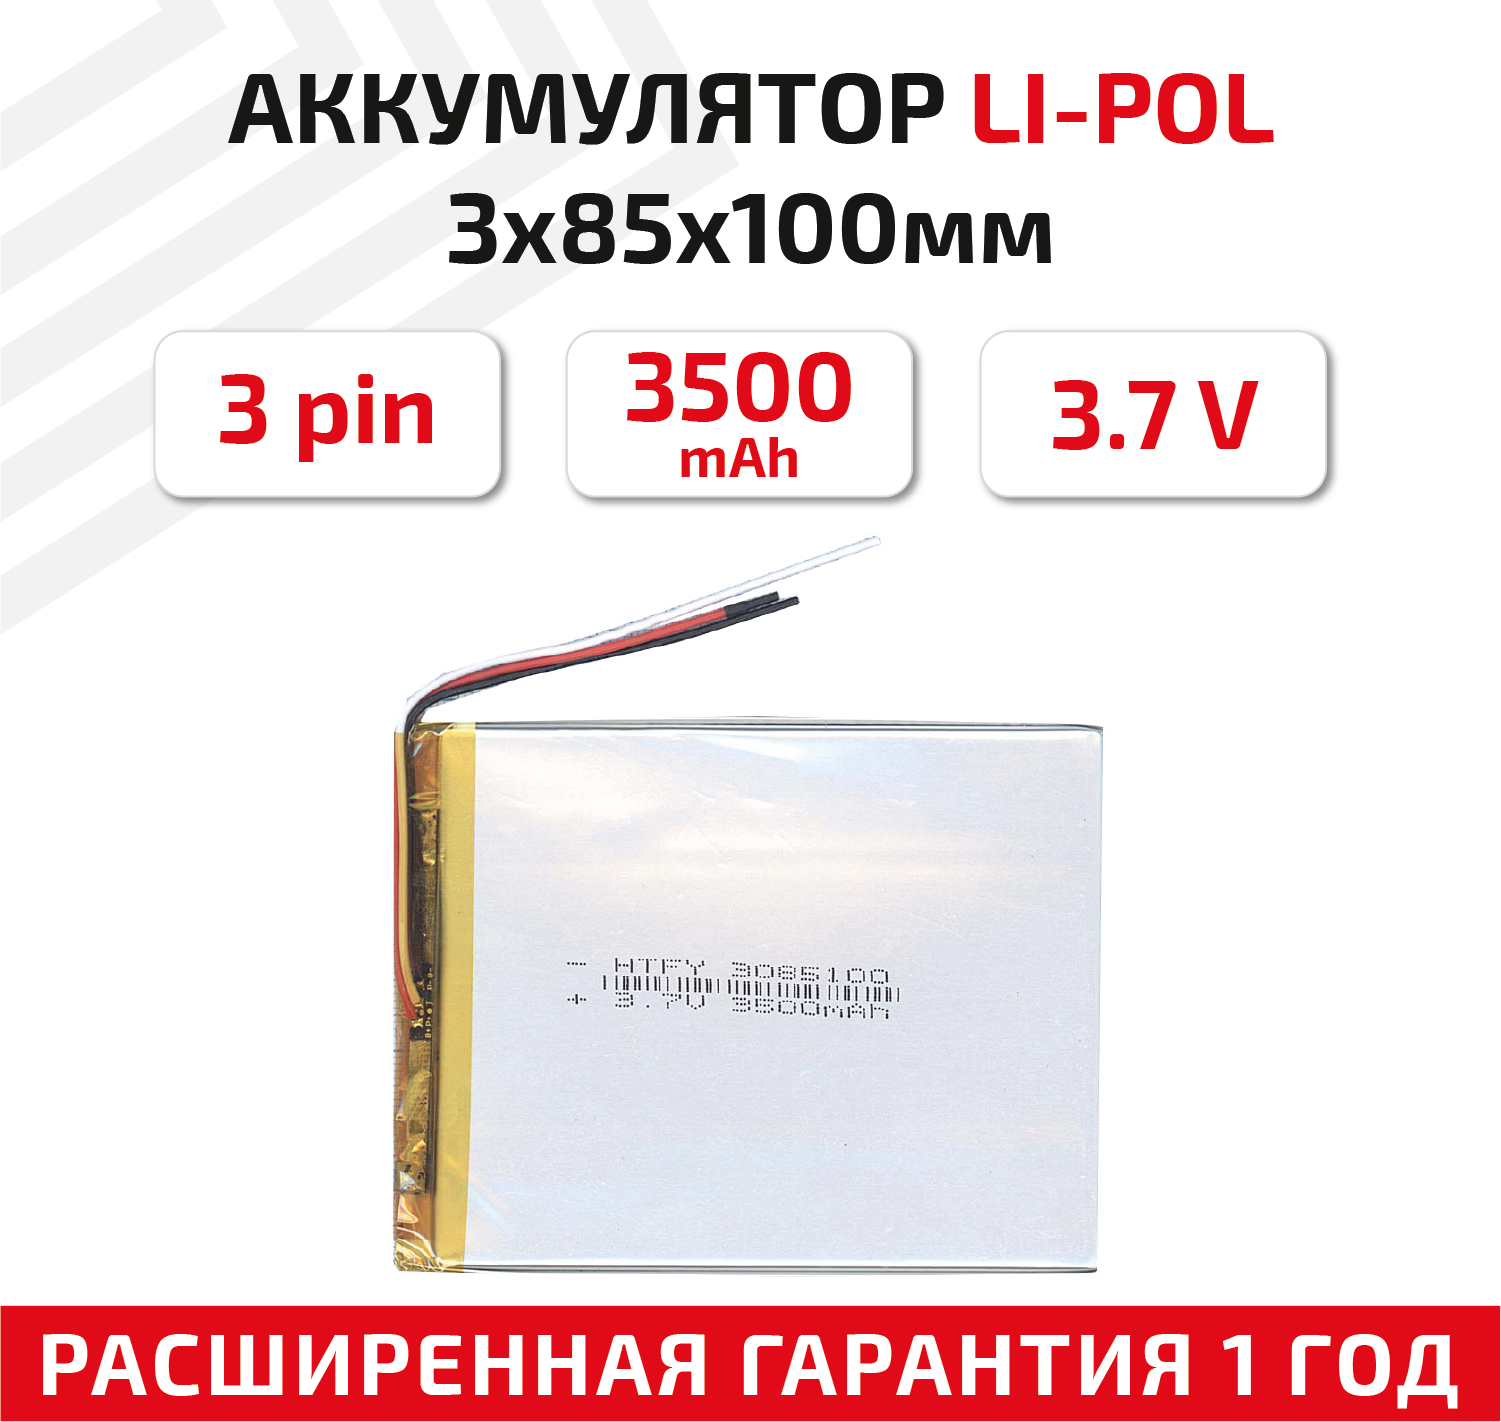 Универсальный аккумулятор (АКБ) для планшета, видеорегистратора и др, 3х85х100мм, 3500мАч, 3.7В, Li-Pol, 3-pin (на 3 провода)